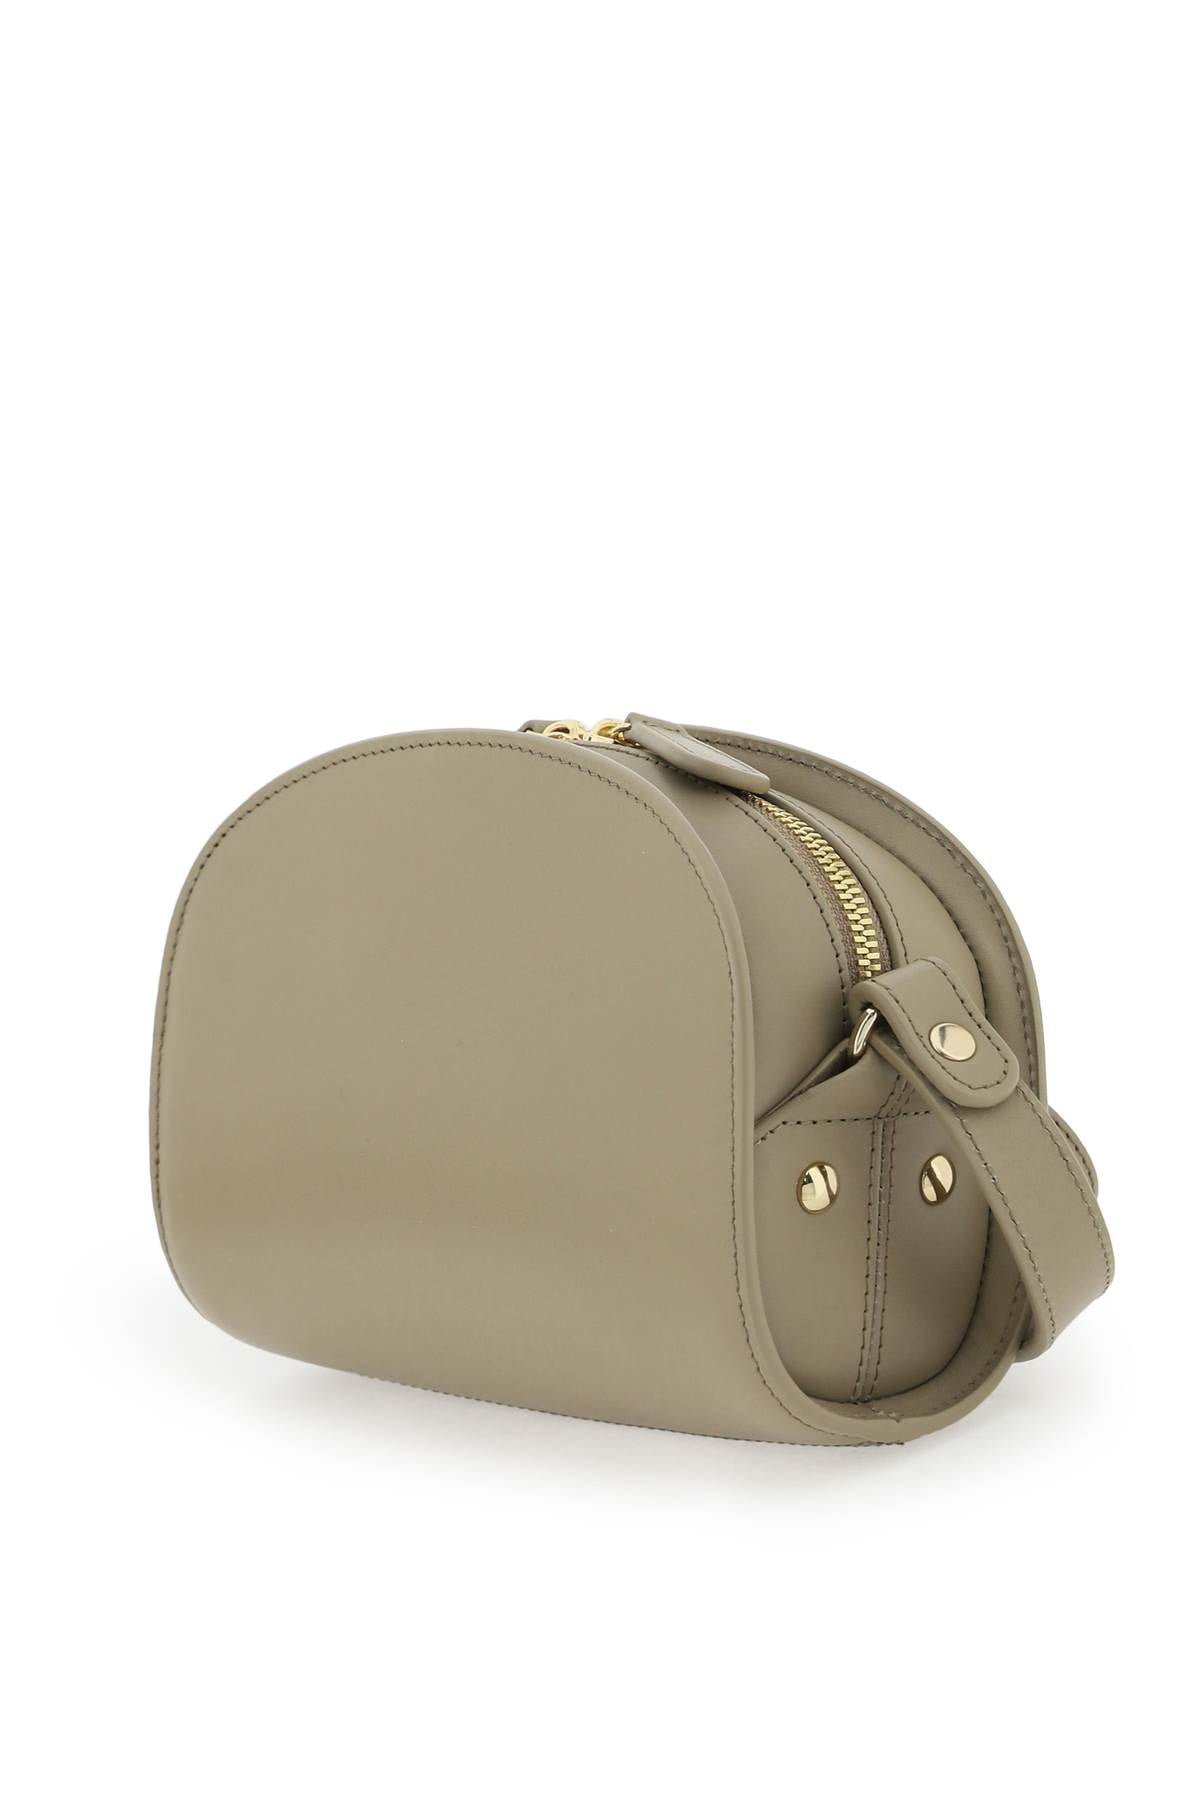 Demi Lune Mini Leather Shoulder Bag in Gold - A P C